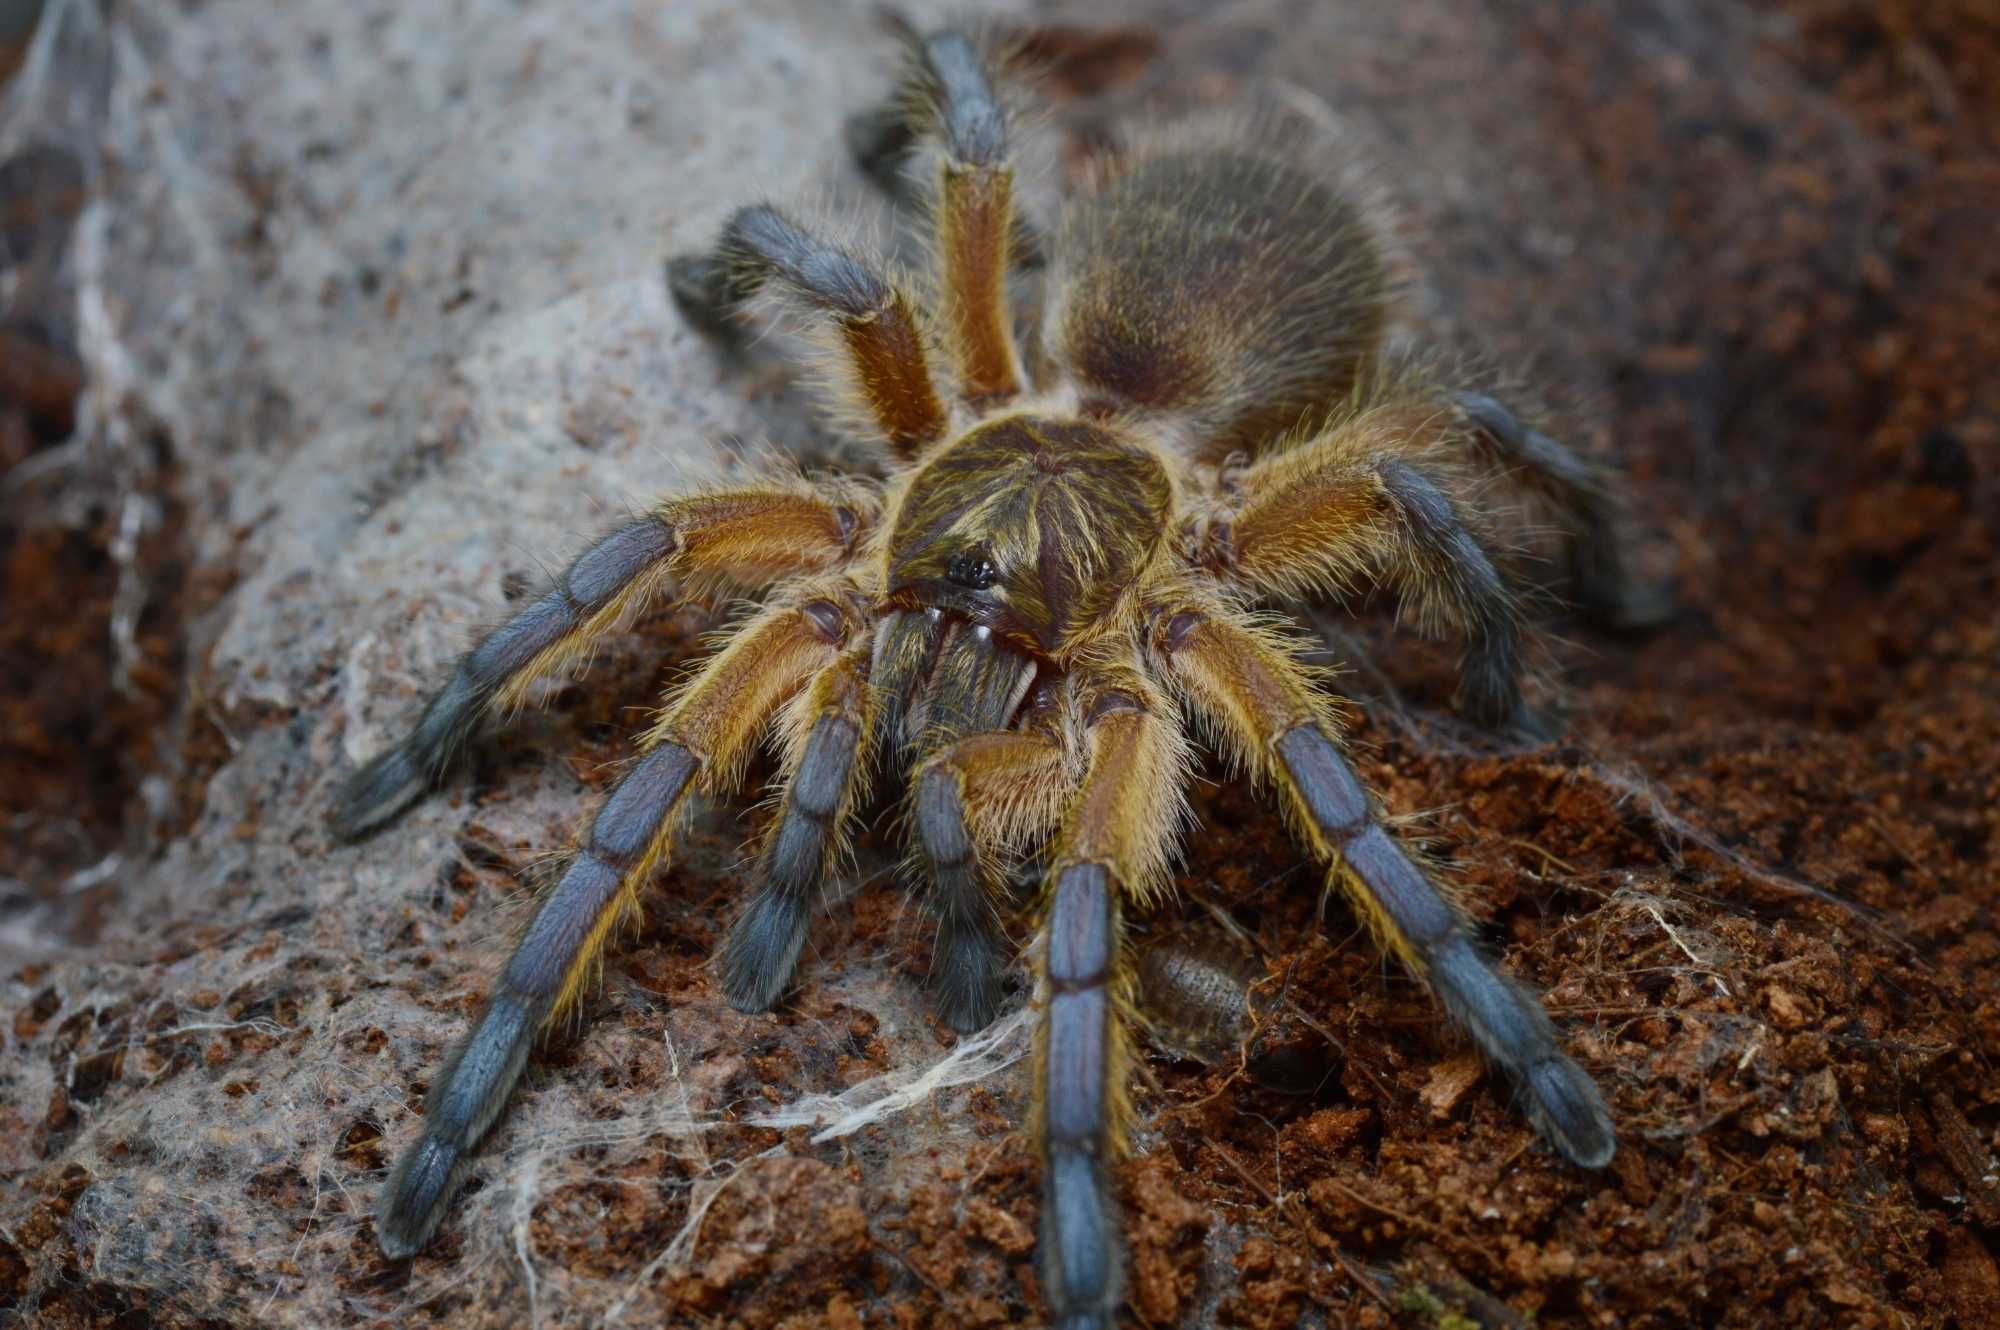 Harpactira pulchripes samica ~3cm ciała. Ptasznik pająk.